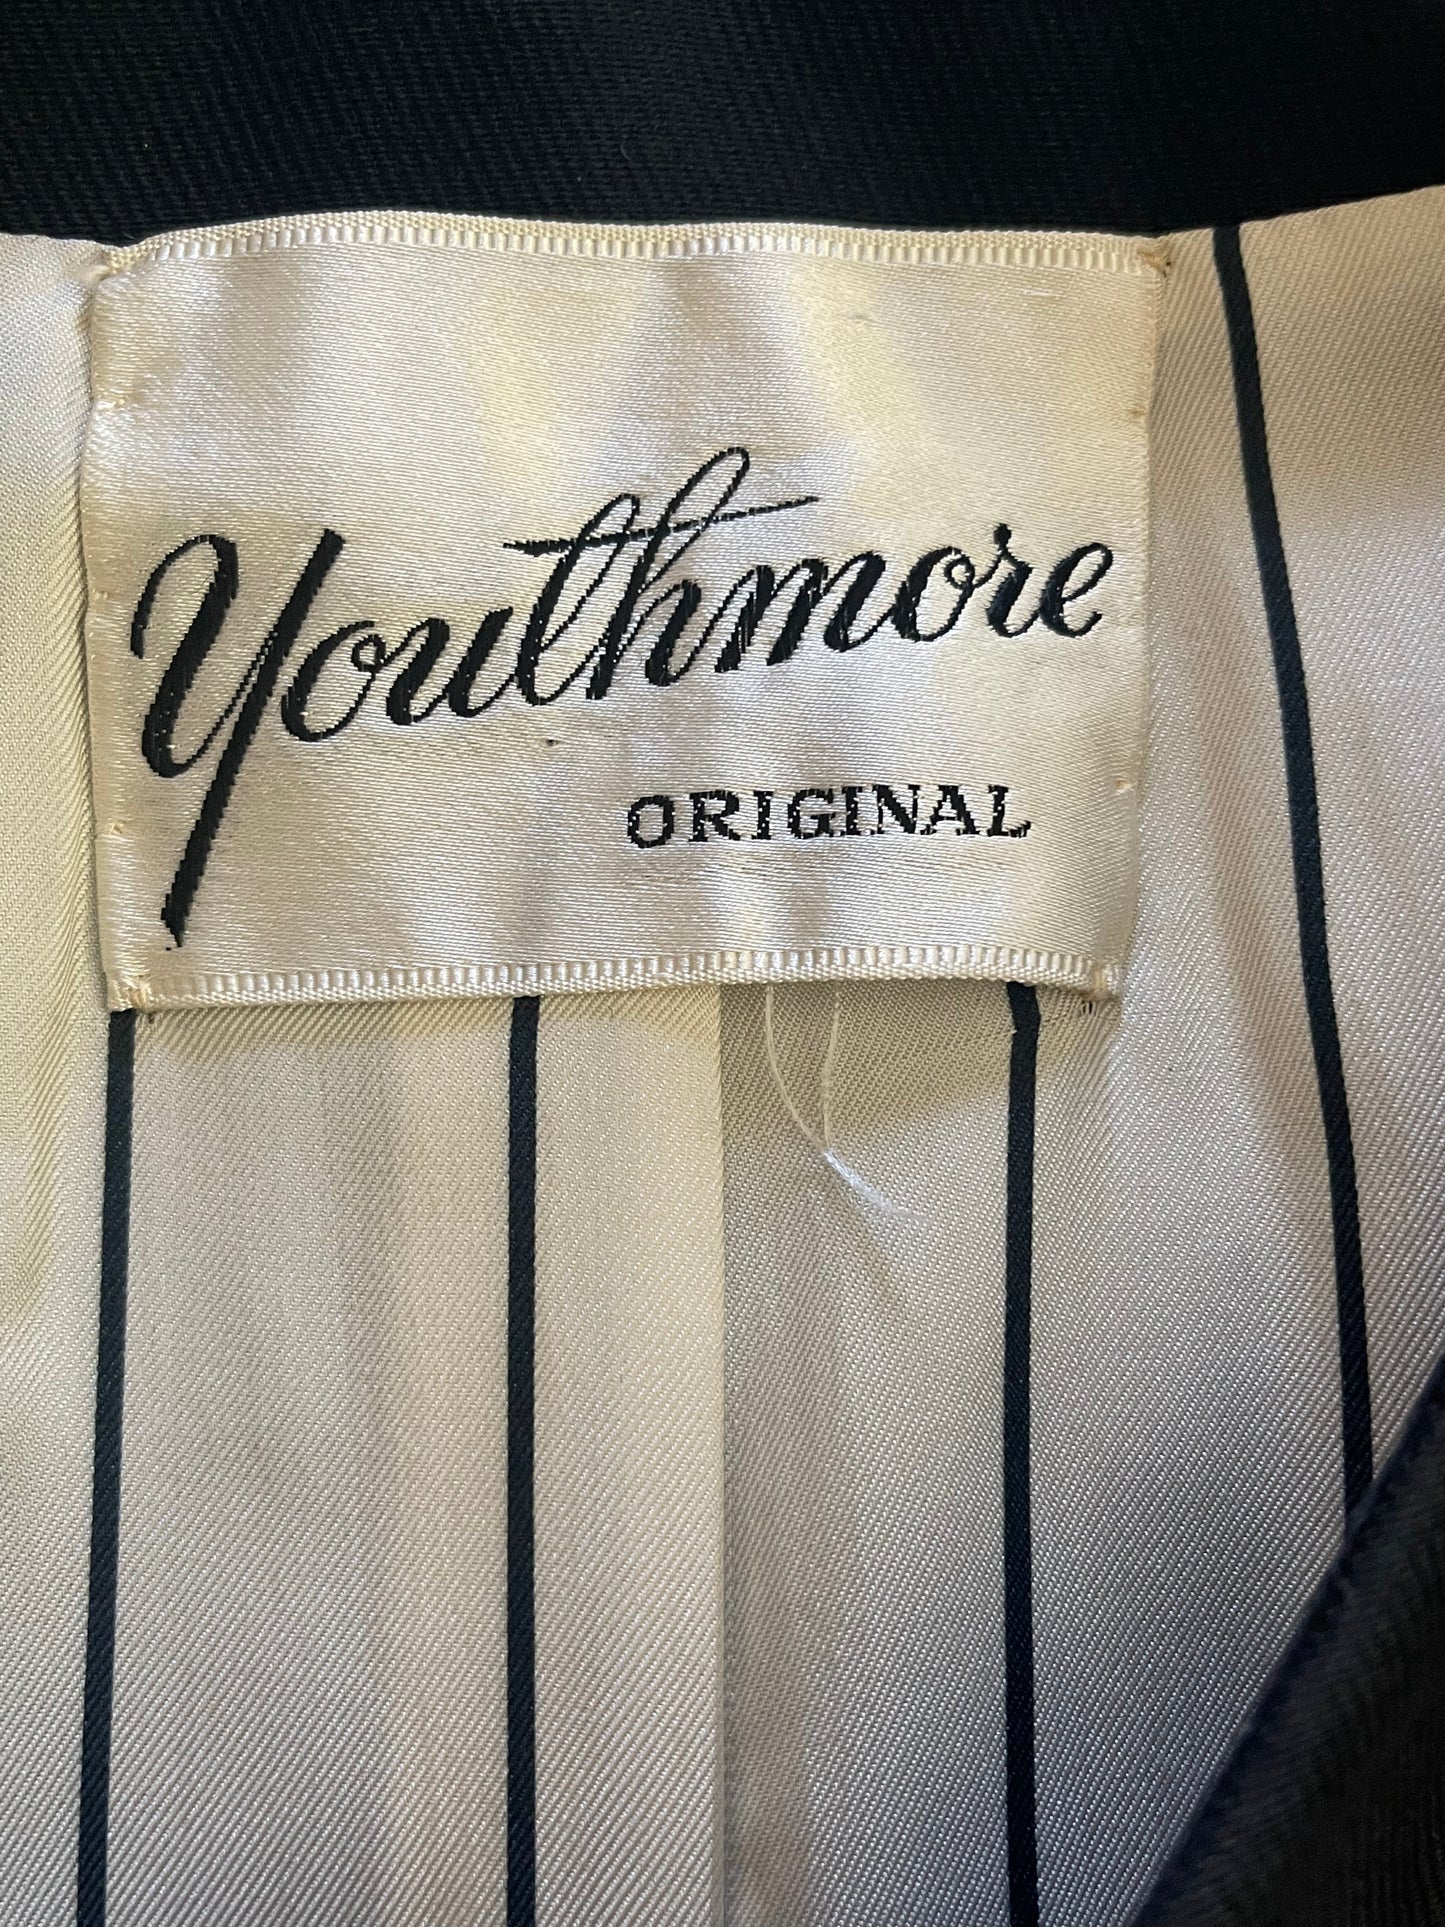 Youthmore Jacket